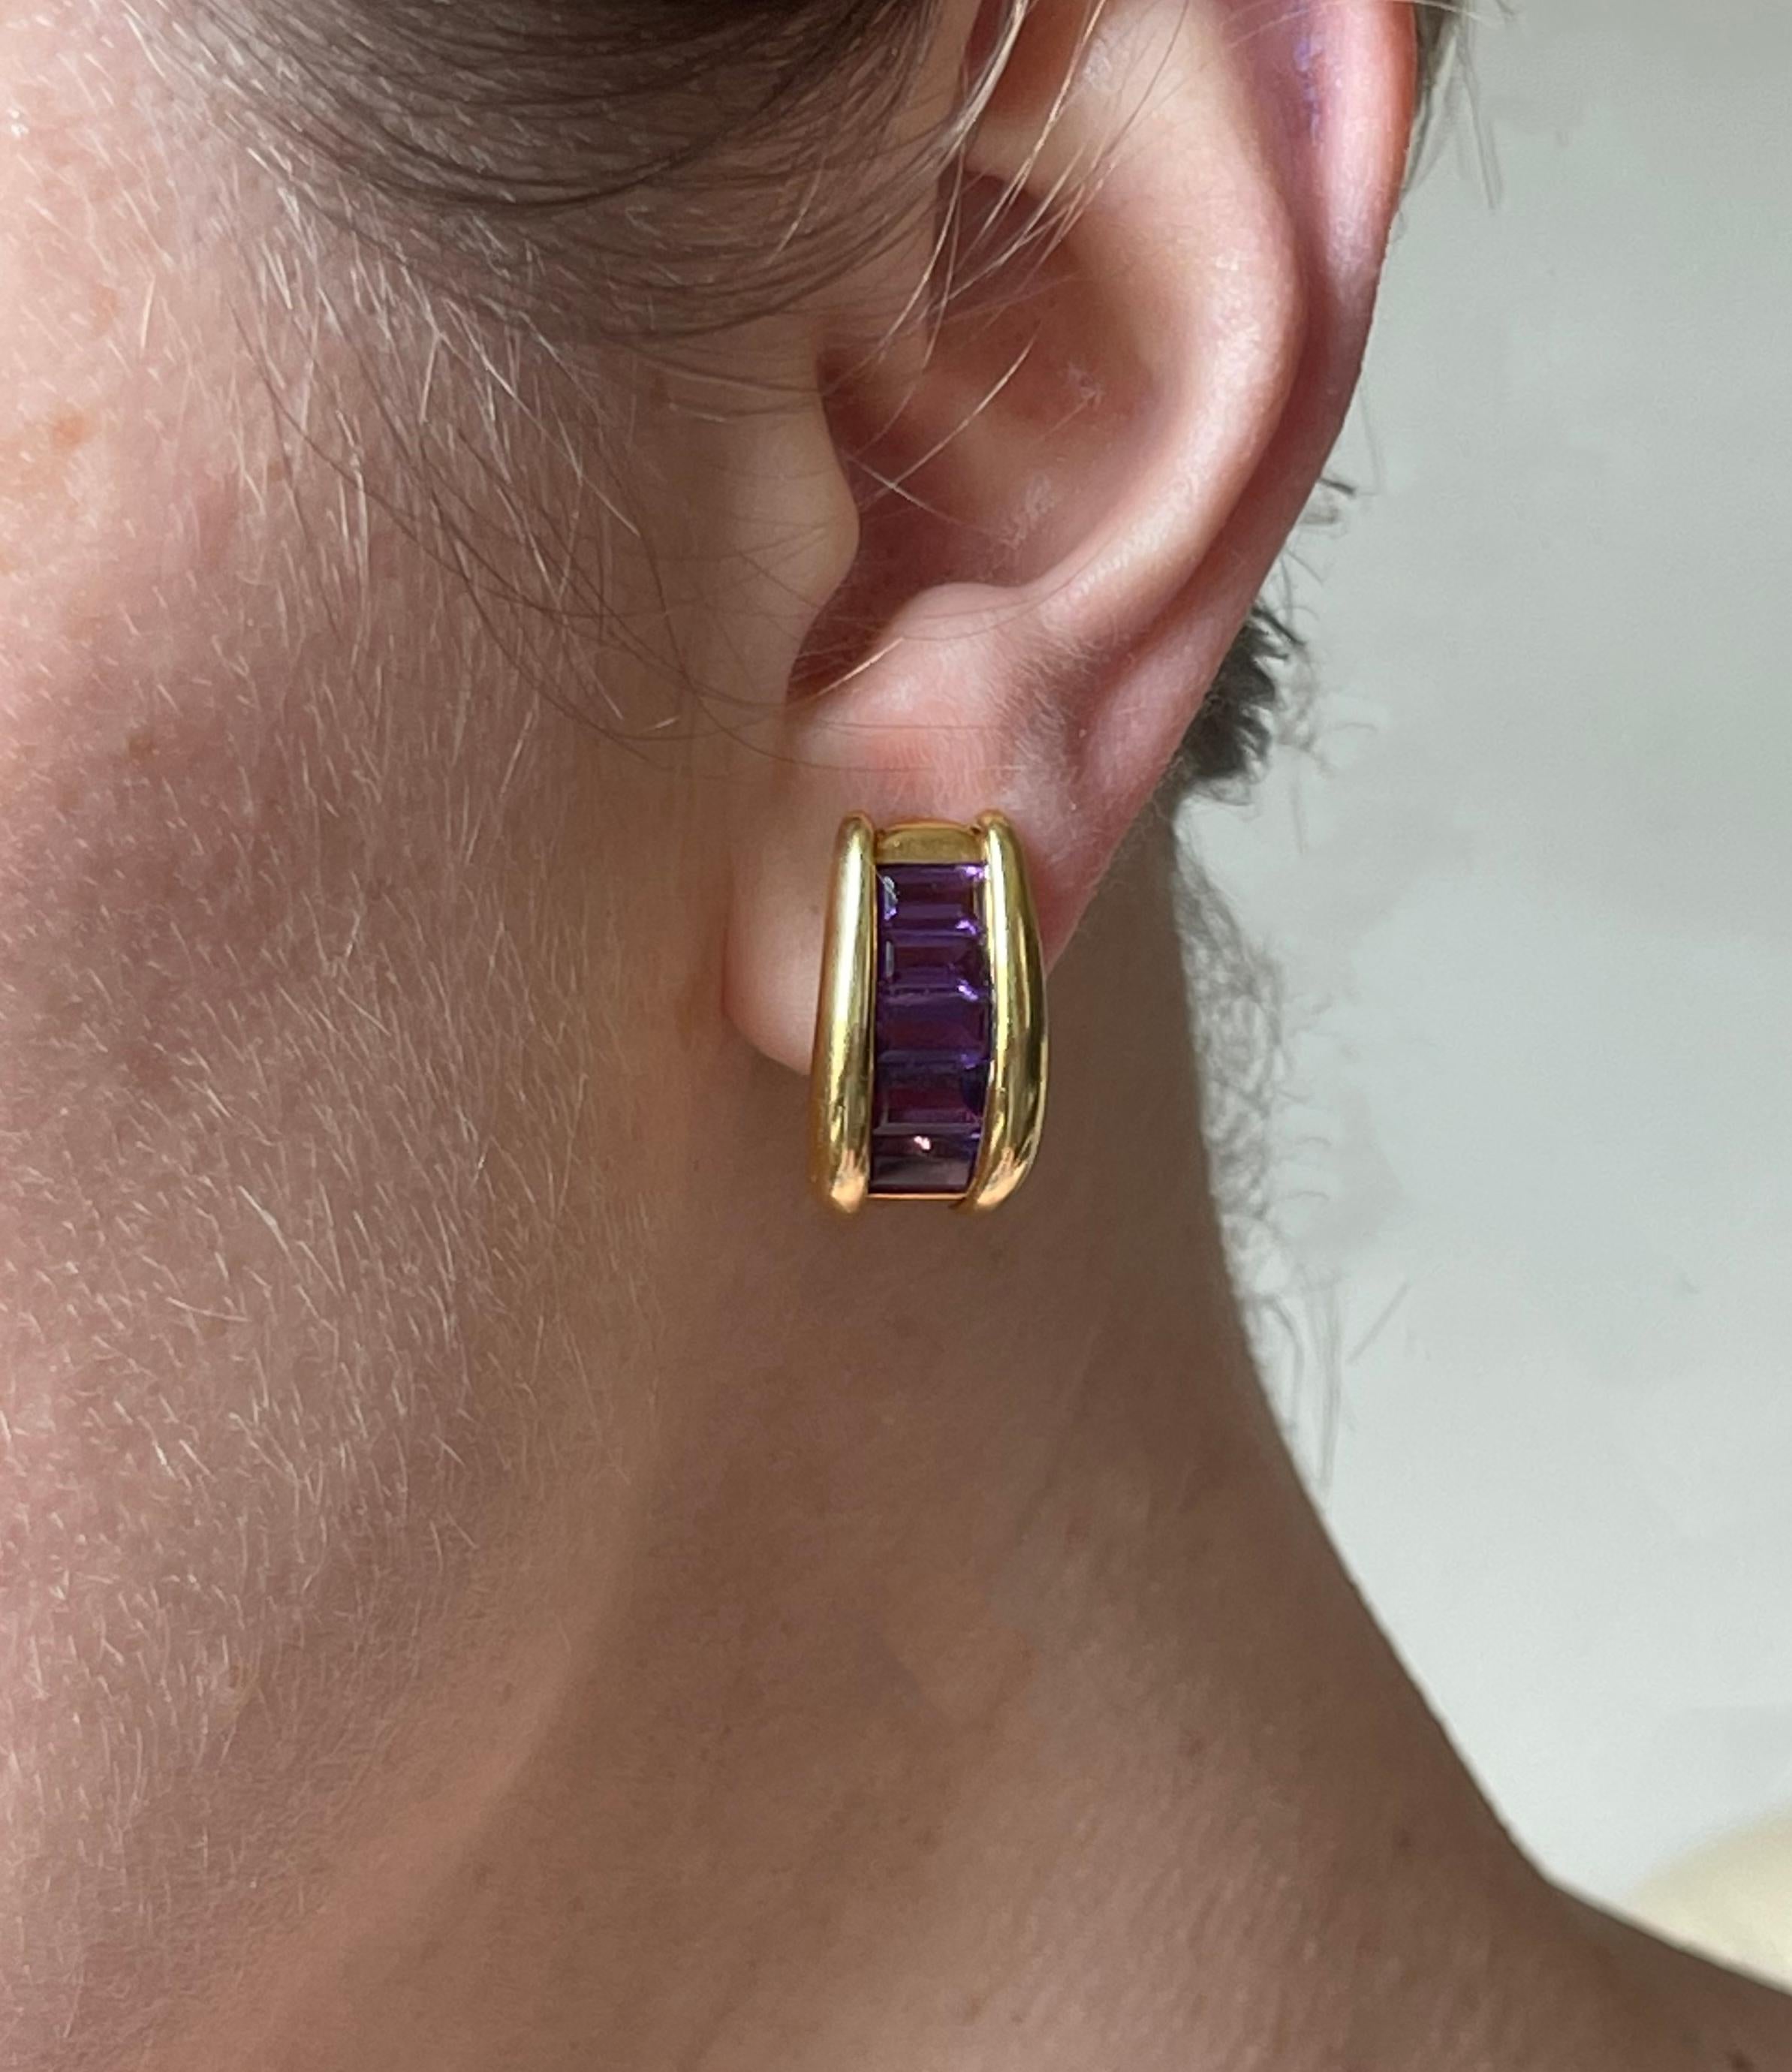 Paar Ohrringe aus 18 Karat Gold aus Italien mit Amethysten im Baguetteschliff. Ohrringe messen 7/8